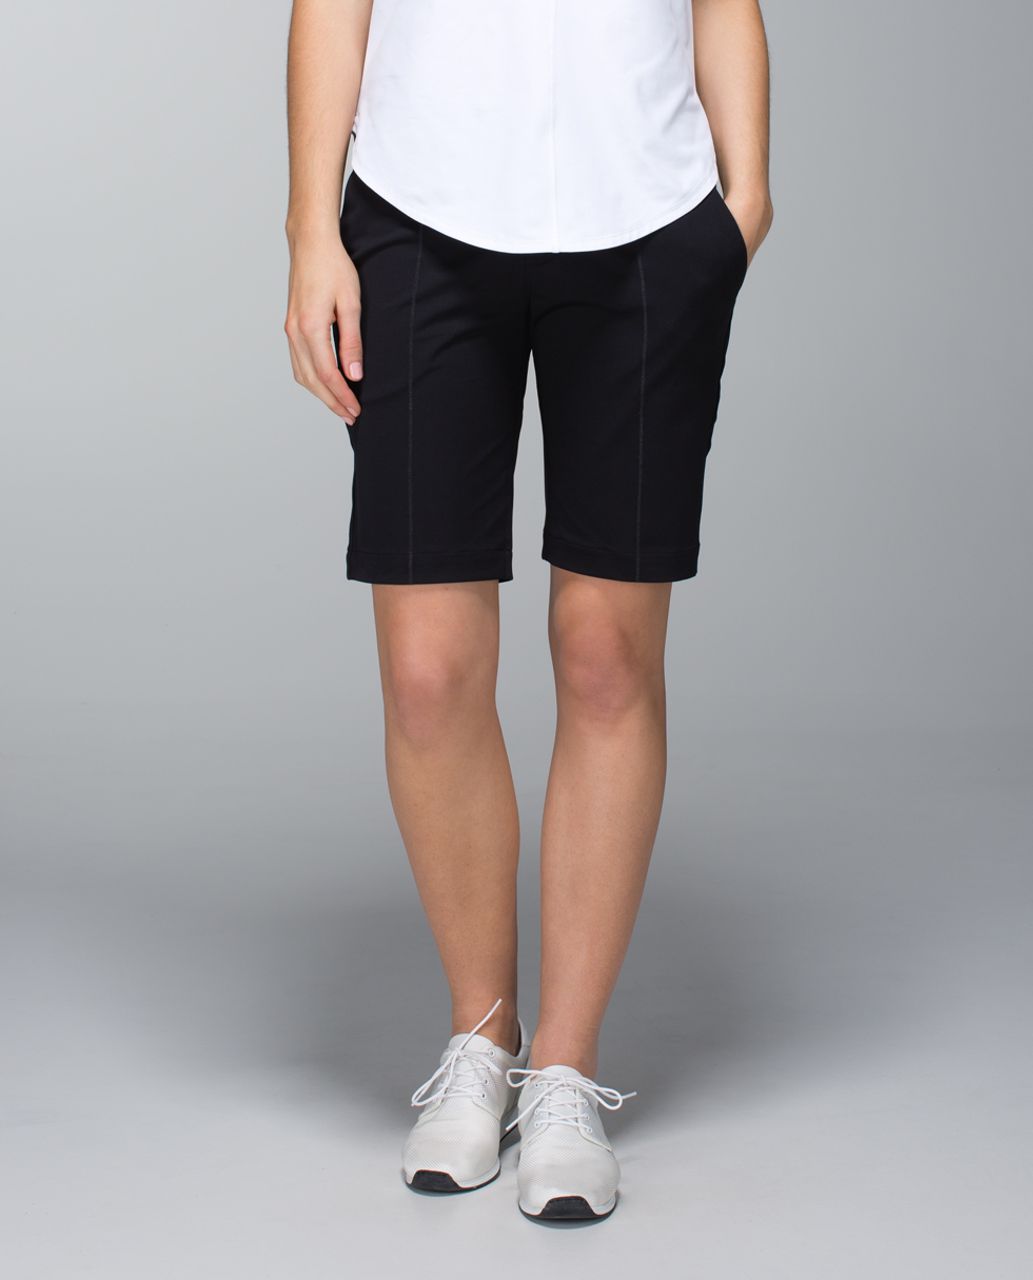 lulu golf shorts